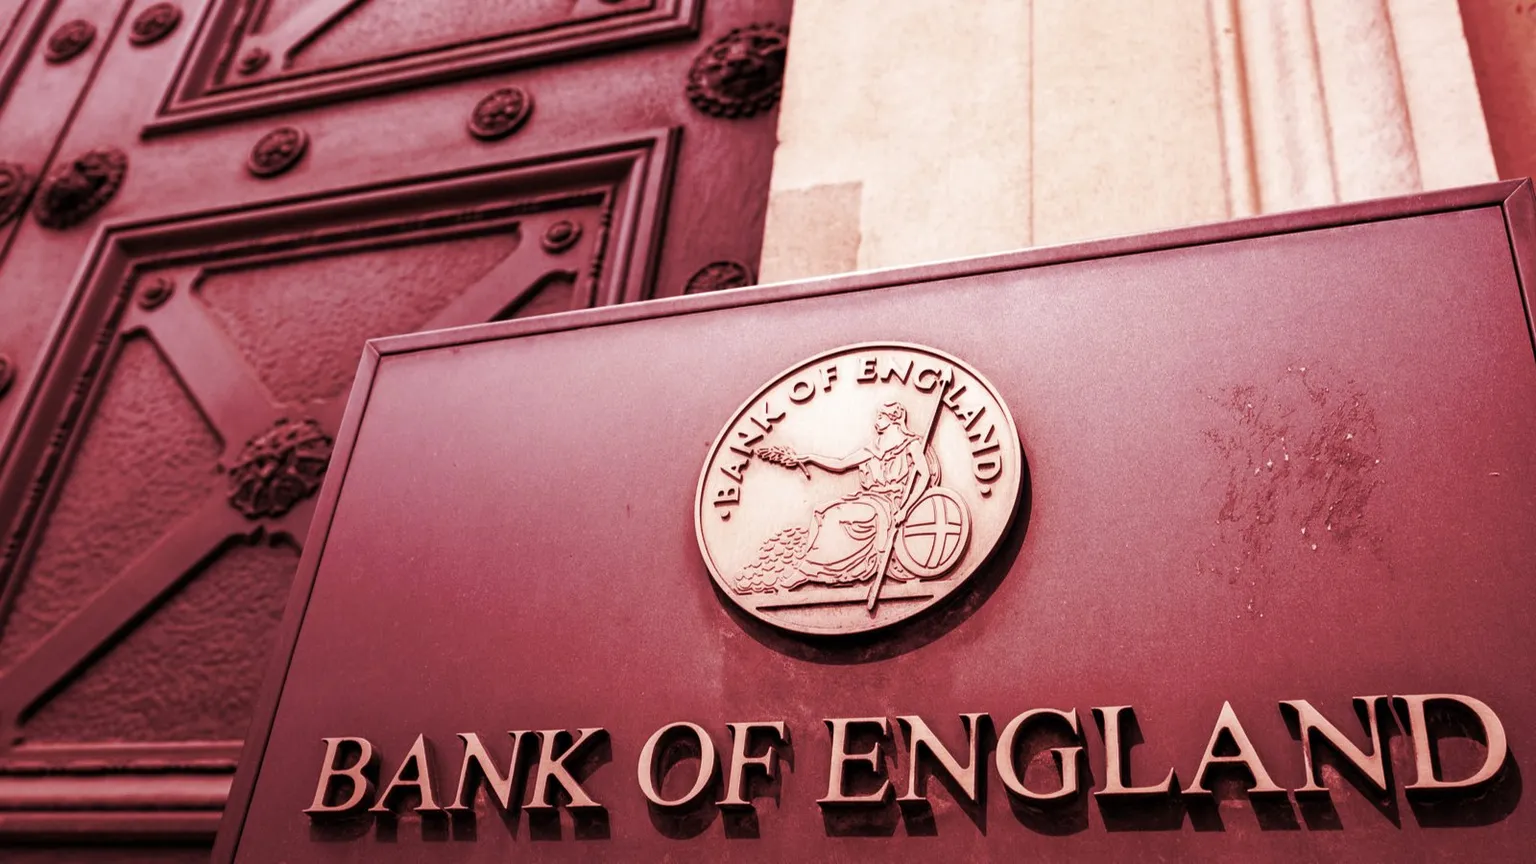 El Banco de Inglaterra es el banco central del Reino Unido. Imagen: Shutterstock